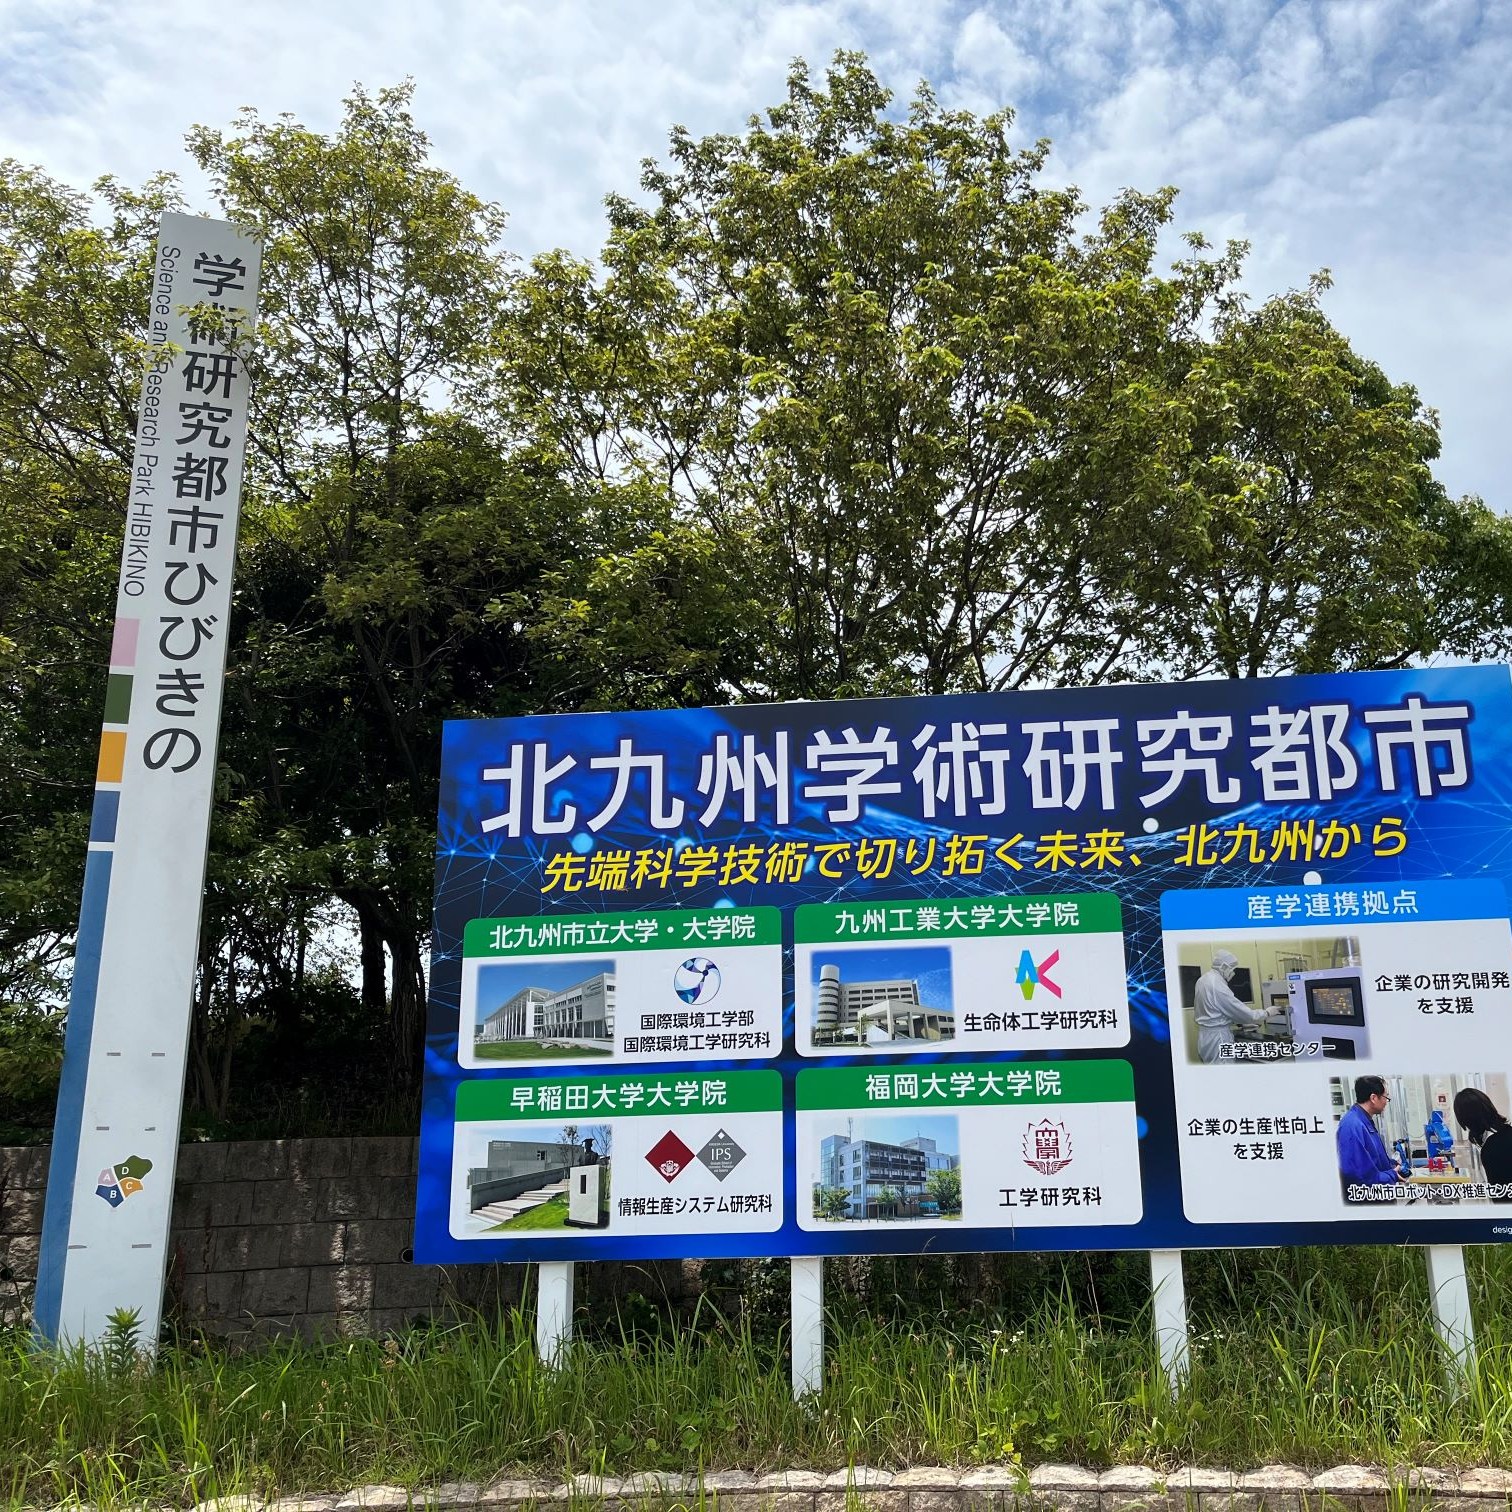 北九州学術研究都市 / Kitakyushu Science and Research Park - KSRP